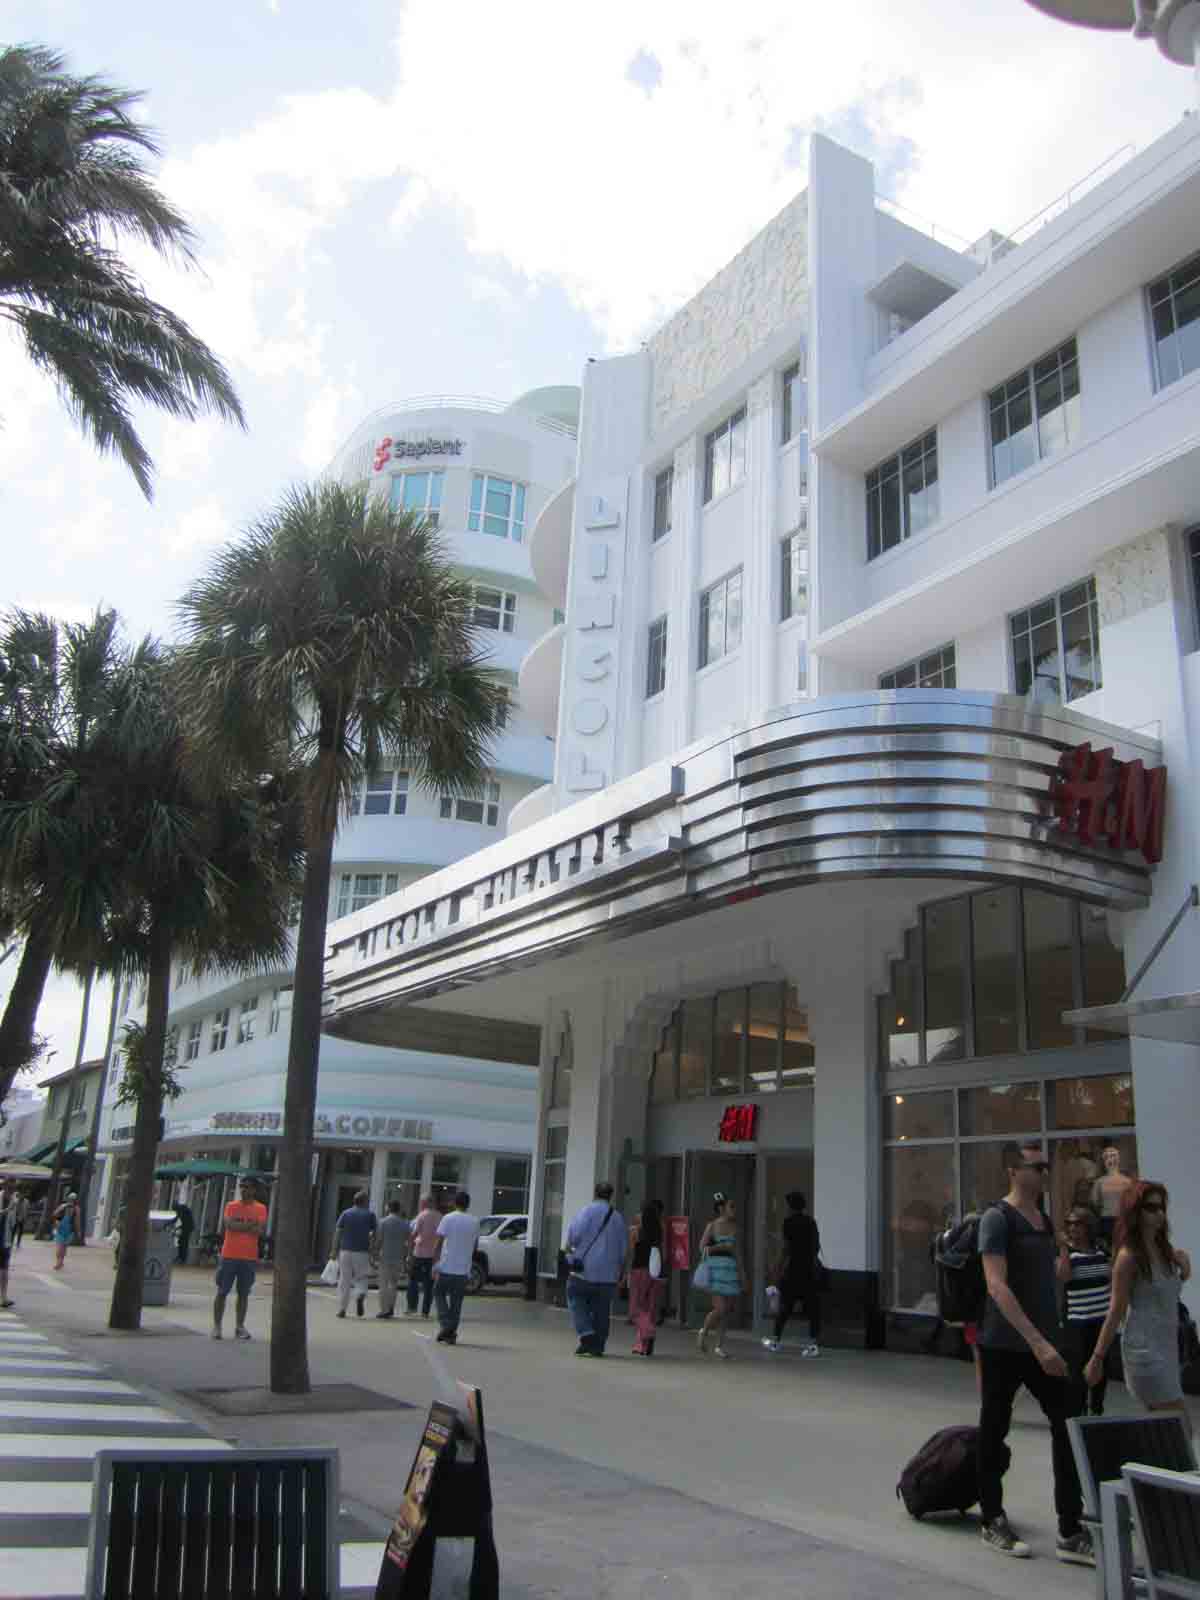 Art deco Lincoln Theatre Miami Beach